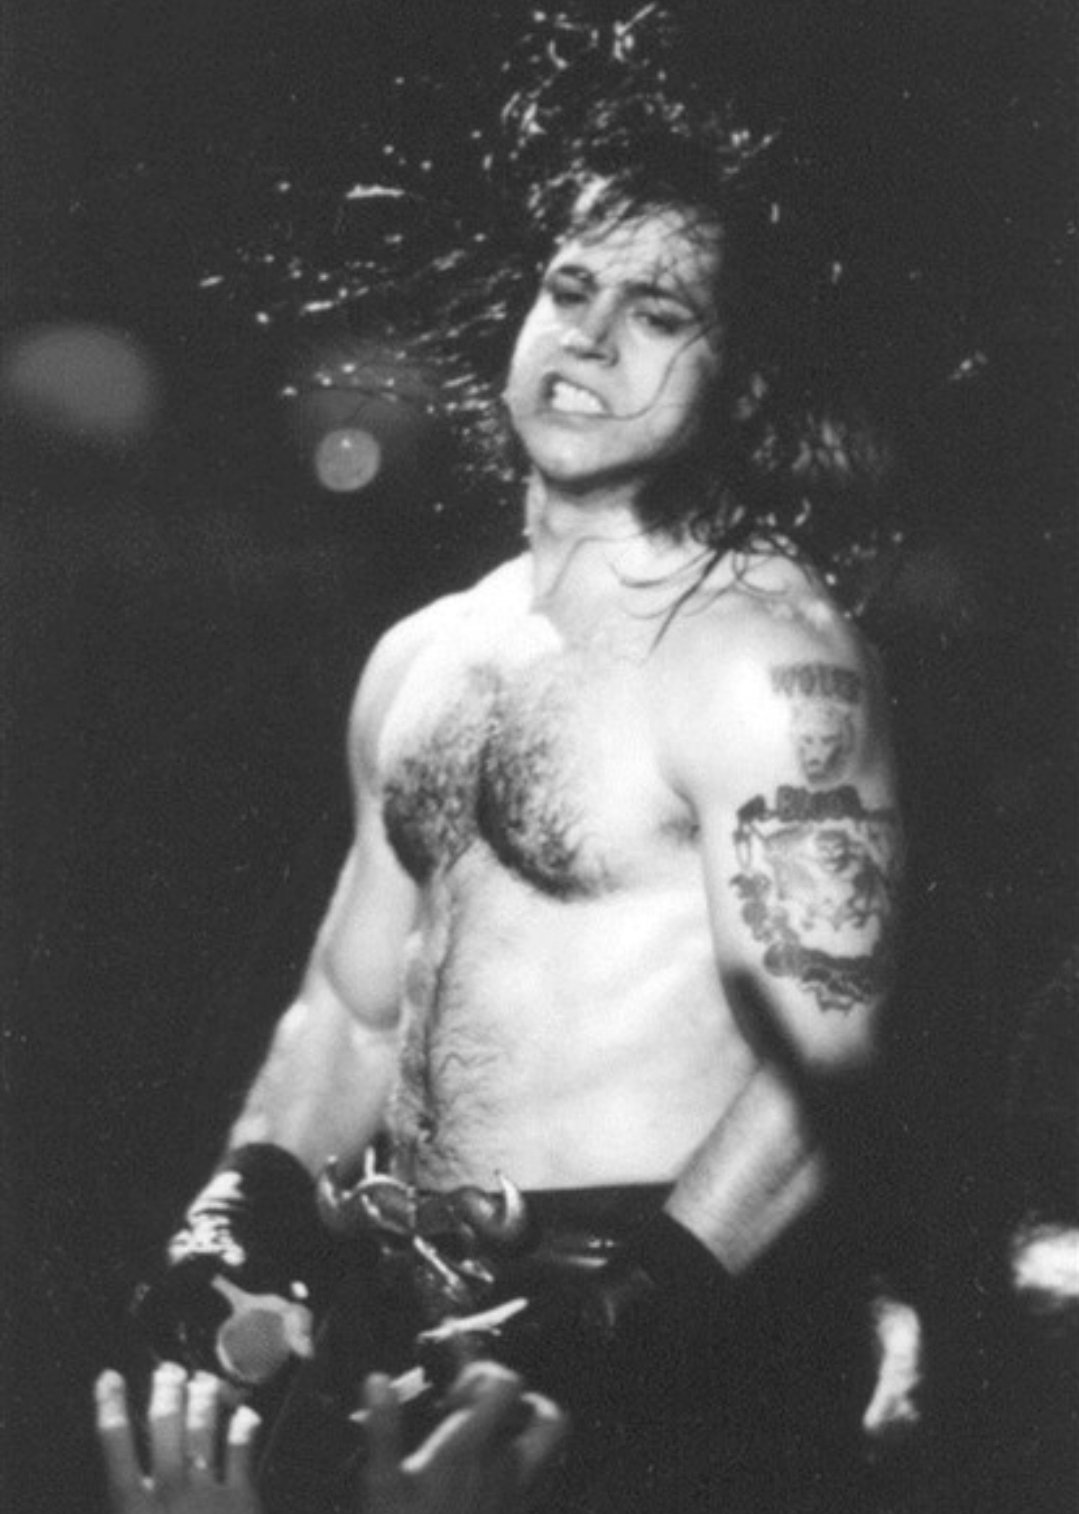 Happy birthday to Glenn Danzig. 